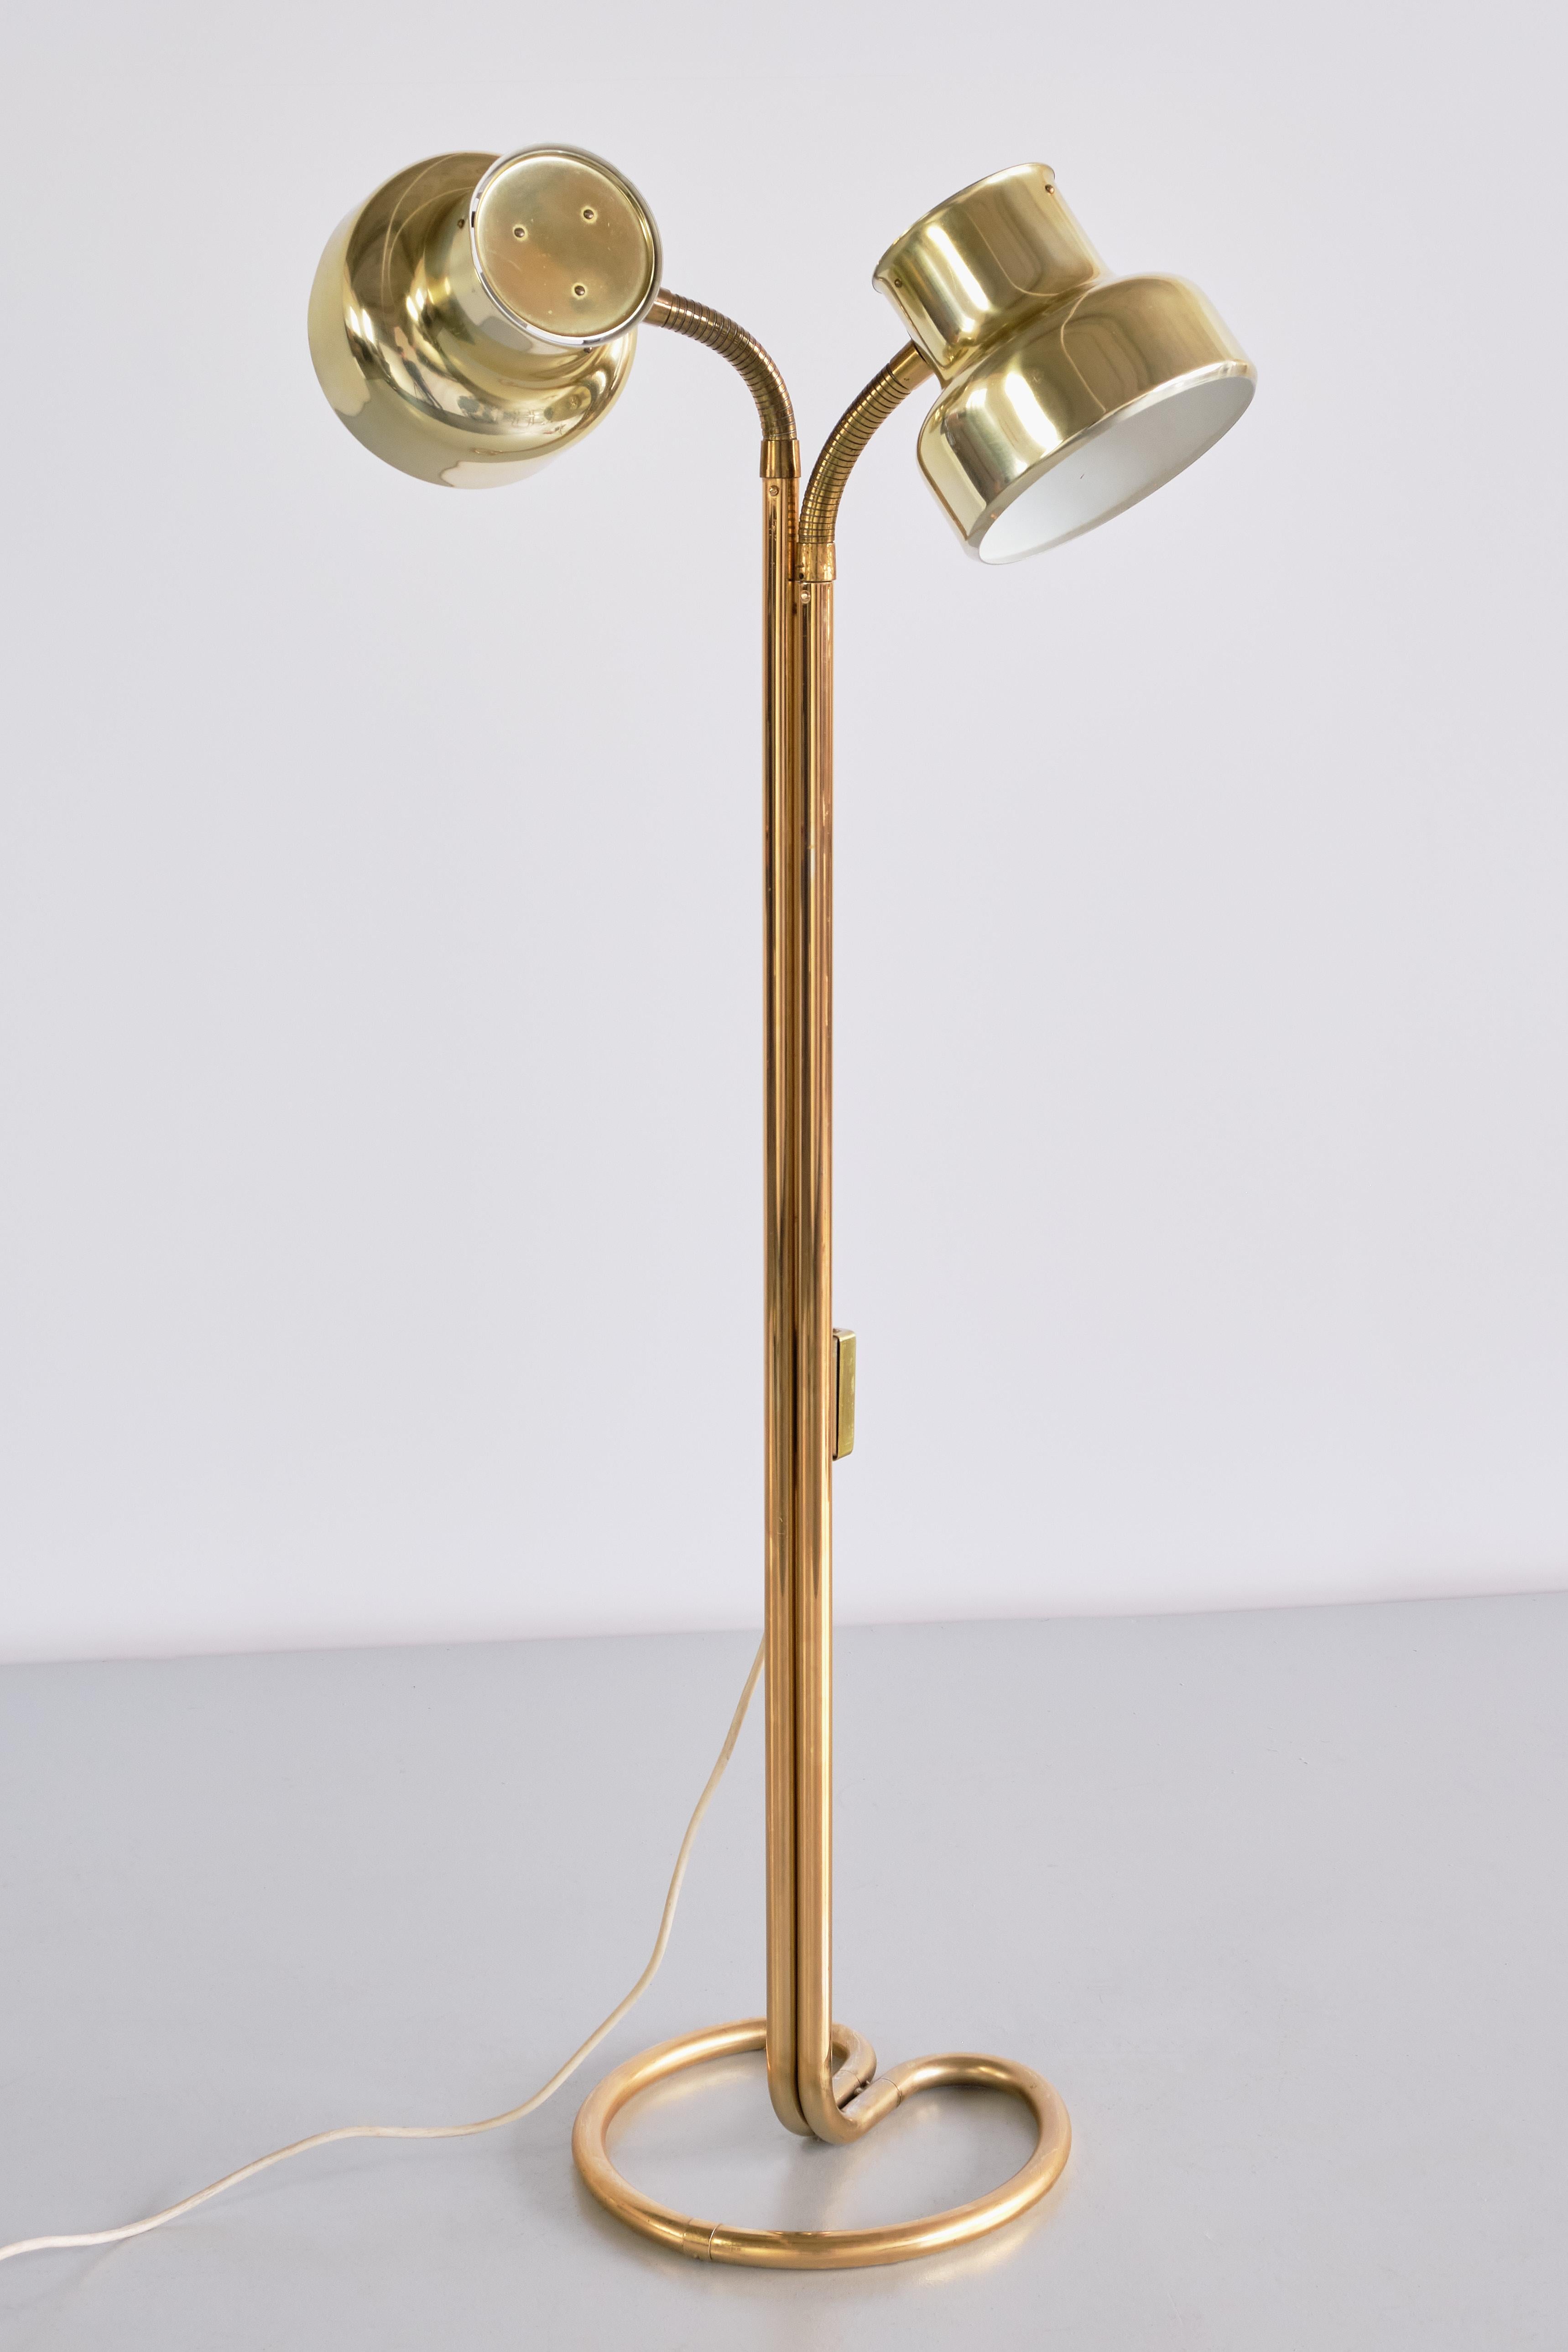 Ce lampadaire saisissant a été conçu par Anders Pehrson, le responsable du design chez Atelje Lyktan à Ahus, en Suède. Le modèle s'appelle Bumling et a été produit en 1968. Il fait partie de la série Bumling, composée de différents modèles mais